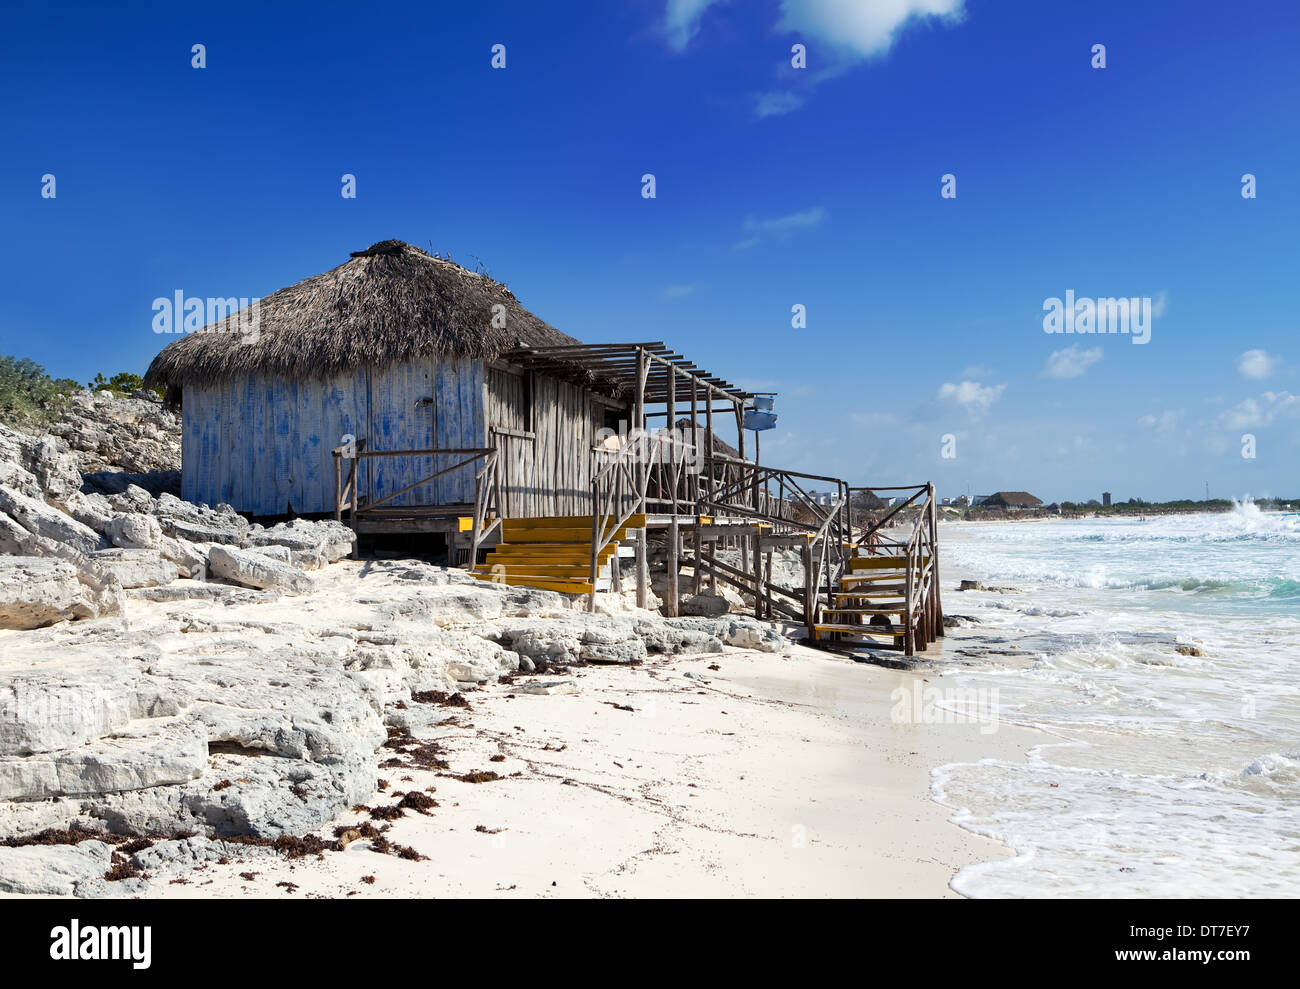 Wooden hut on the seashore. Cayo Largo's island, Cuba Stock Photo